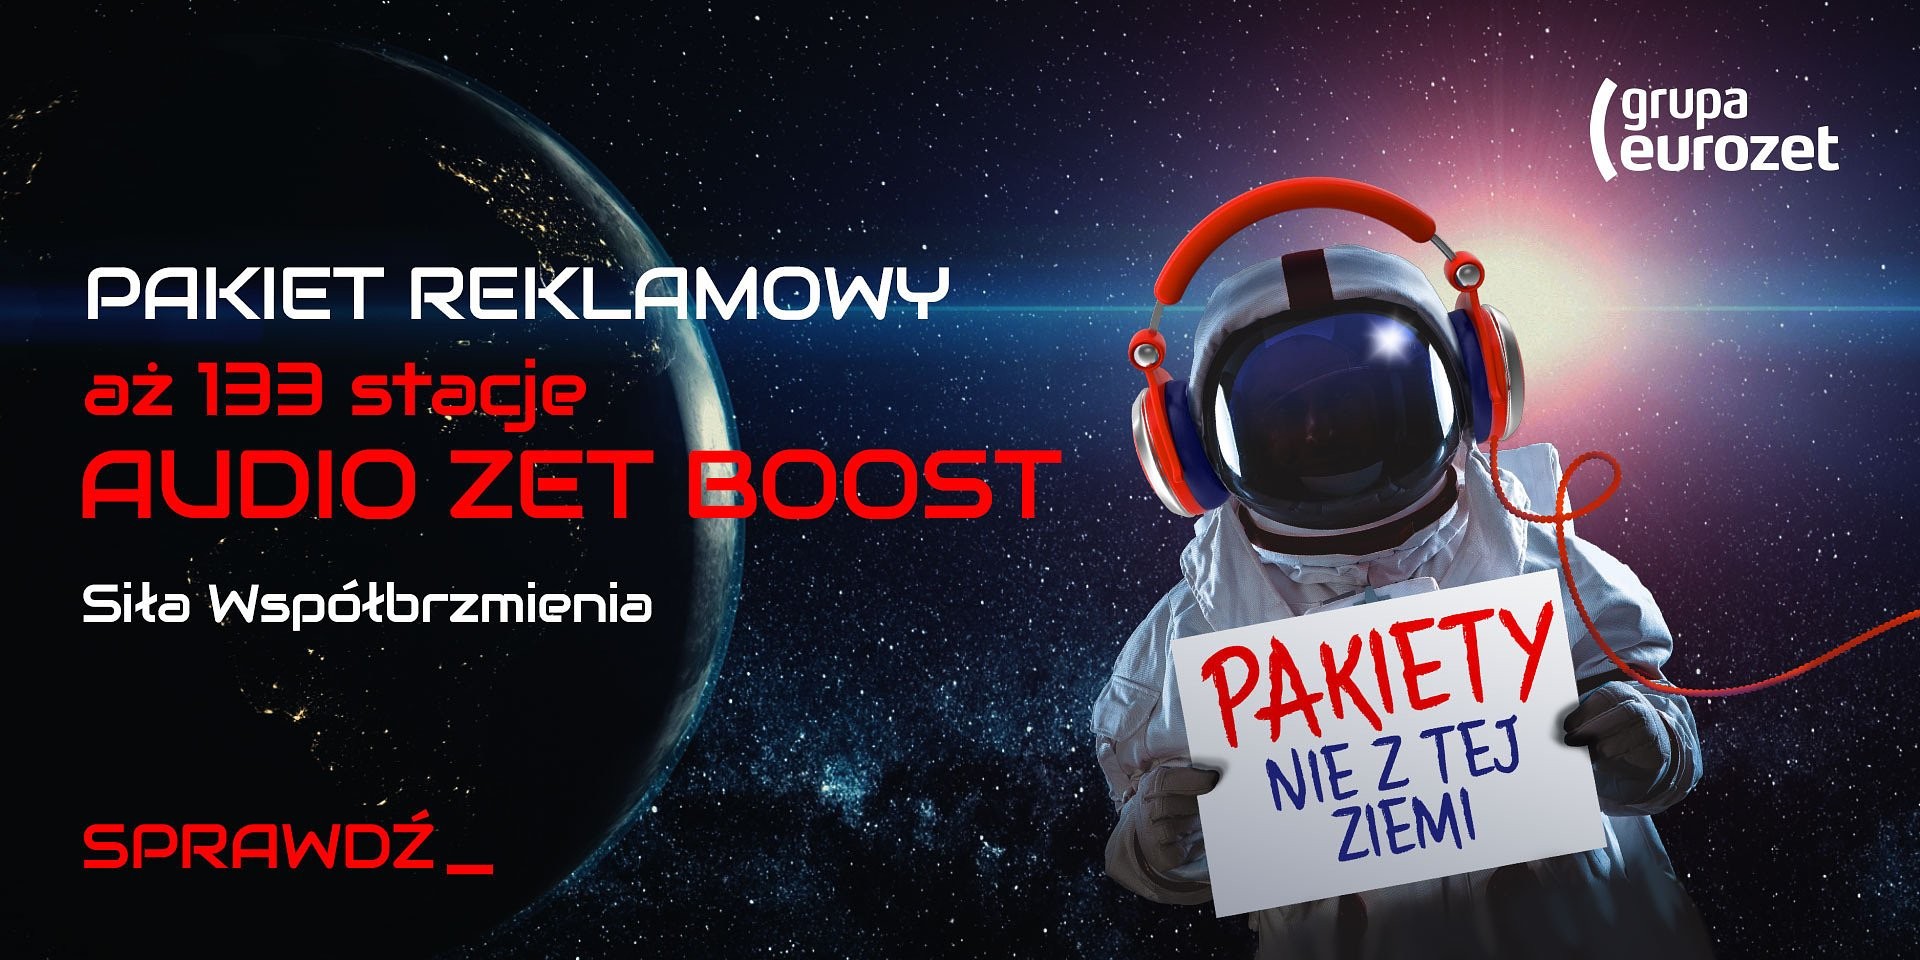 Audio ZET Boost i Audio ZET - nowe pakiety Grupy Eurozet